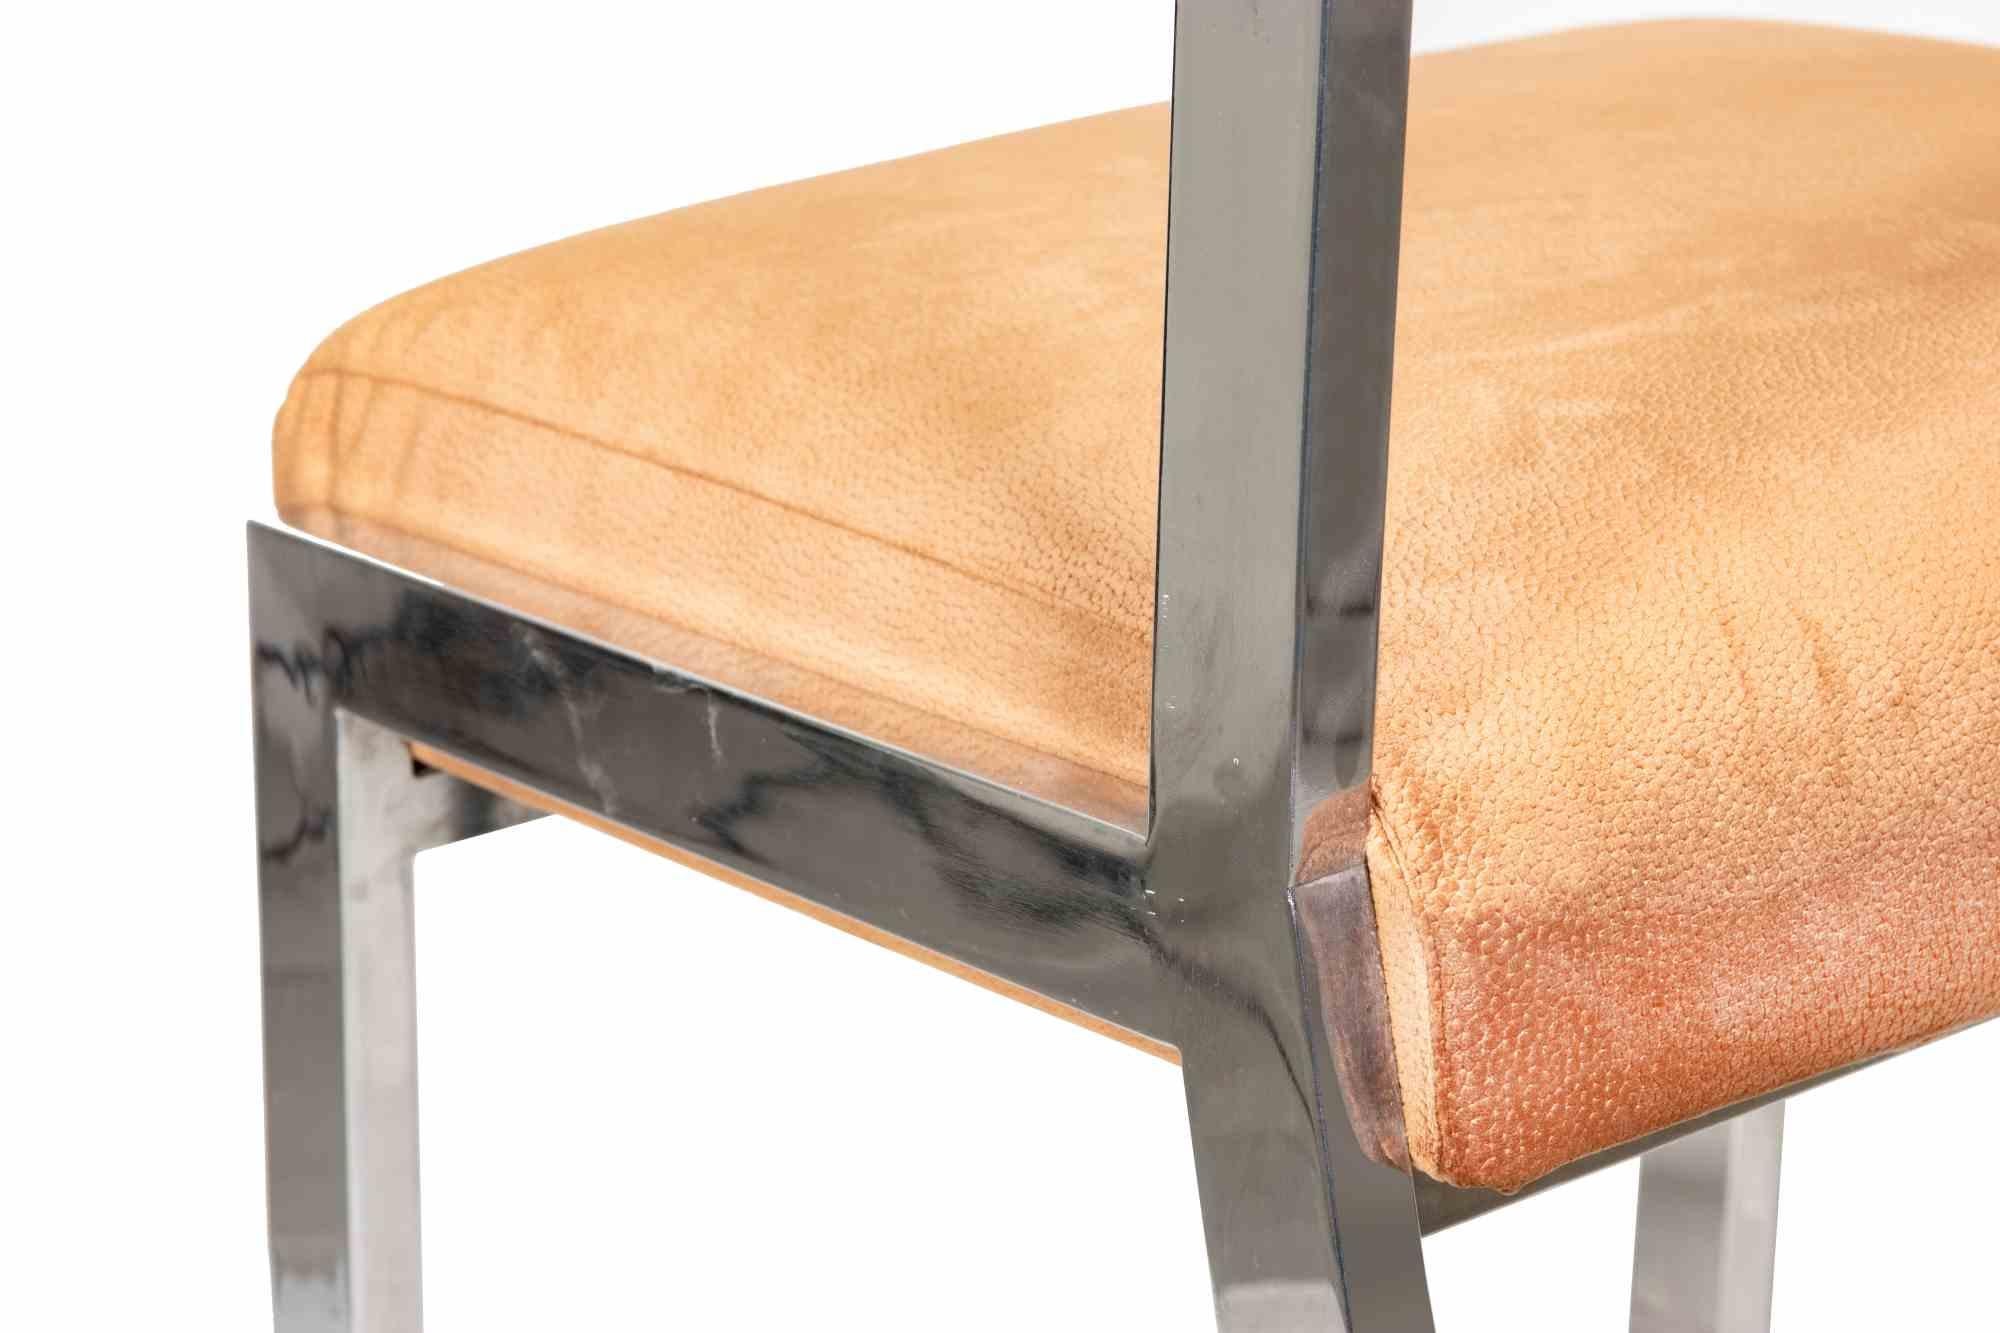 Ensemble de 4 chaises de Willy Rizzo, 1970.

Métal et tissu.

Hauteur totale  83 cm, hauteur d'assise 50 cm, longueur 46 cm, profondeur 42 cm.  

Bonnes conditions.